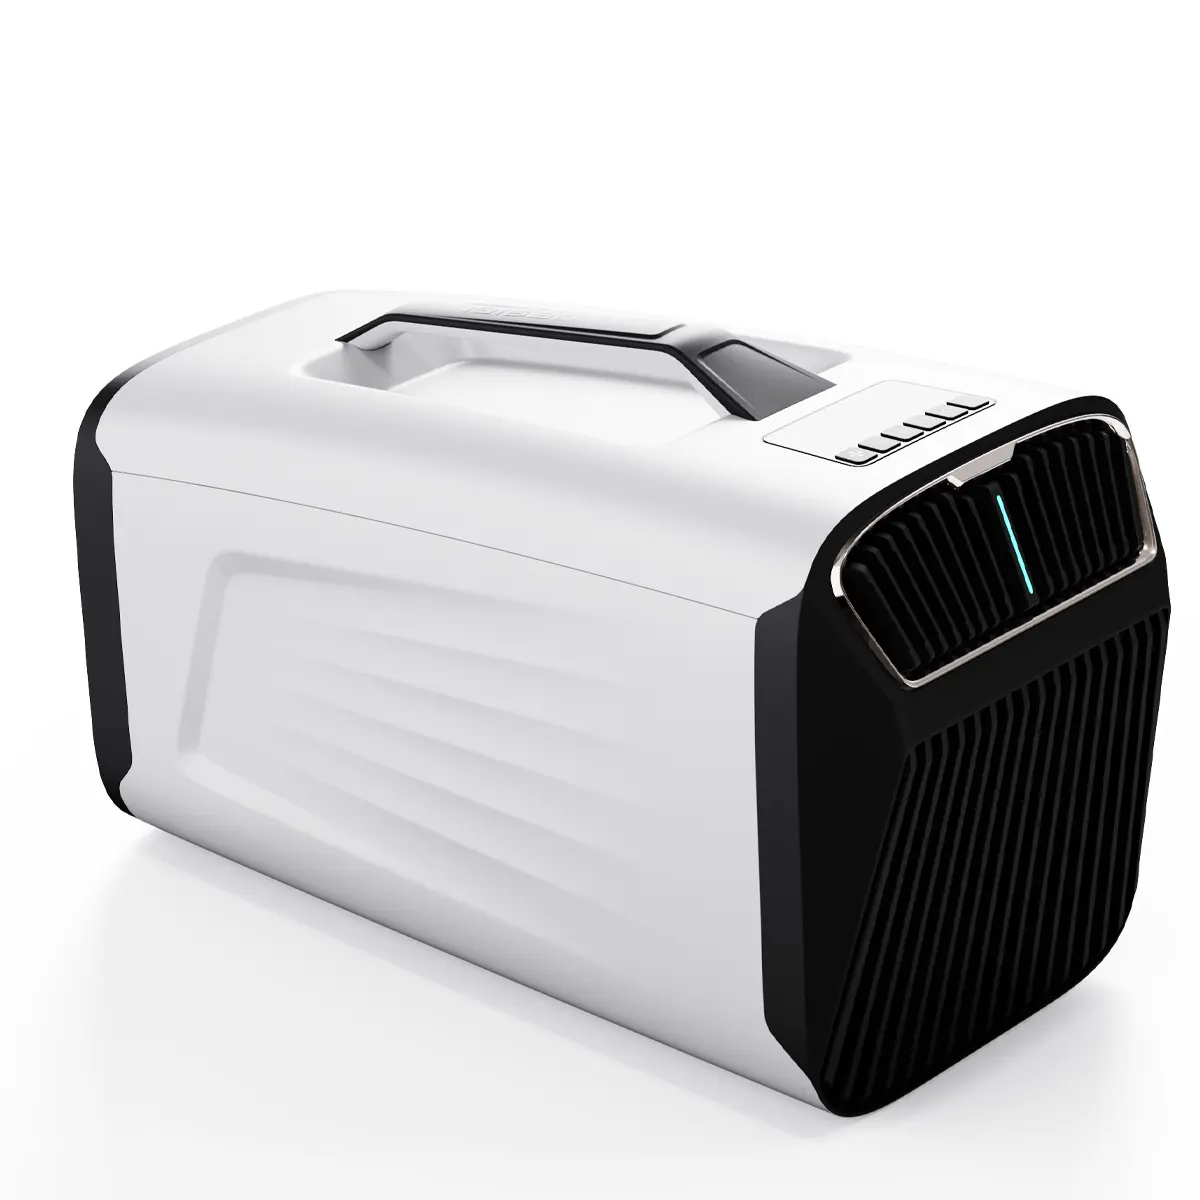 جهاز تكييف هواء محمول بتصميم جديد من IOG-1 وهو منتج أكثر مظهرًا صديق للبيئة وهو عازل هواء يُستخدم في العديد من المشاهد